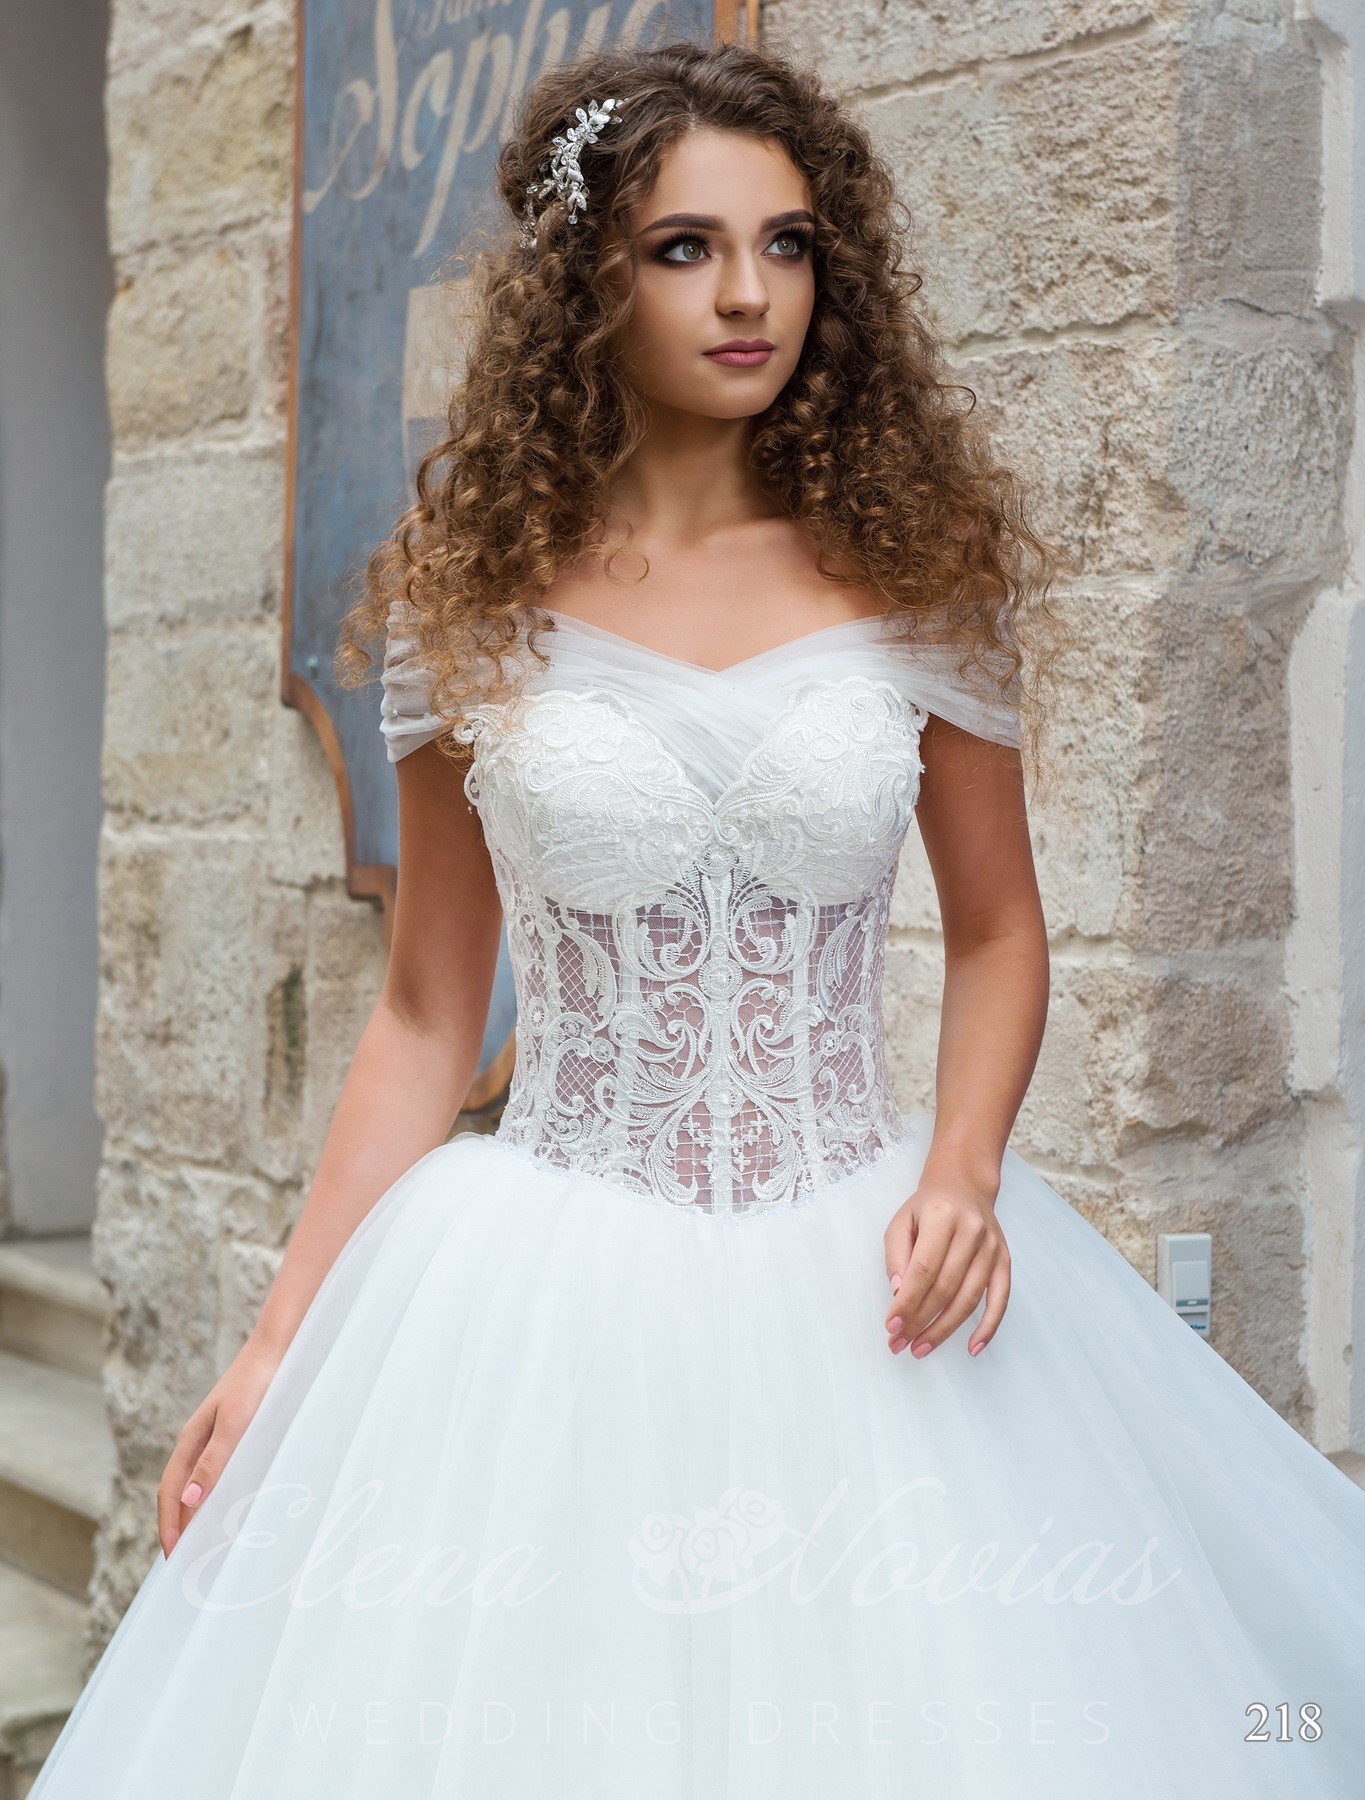 Свадебное платье фасона "Принцесса" модель 218